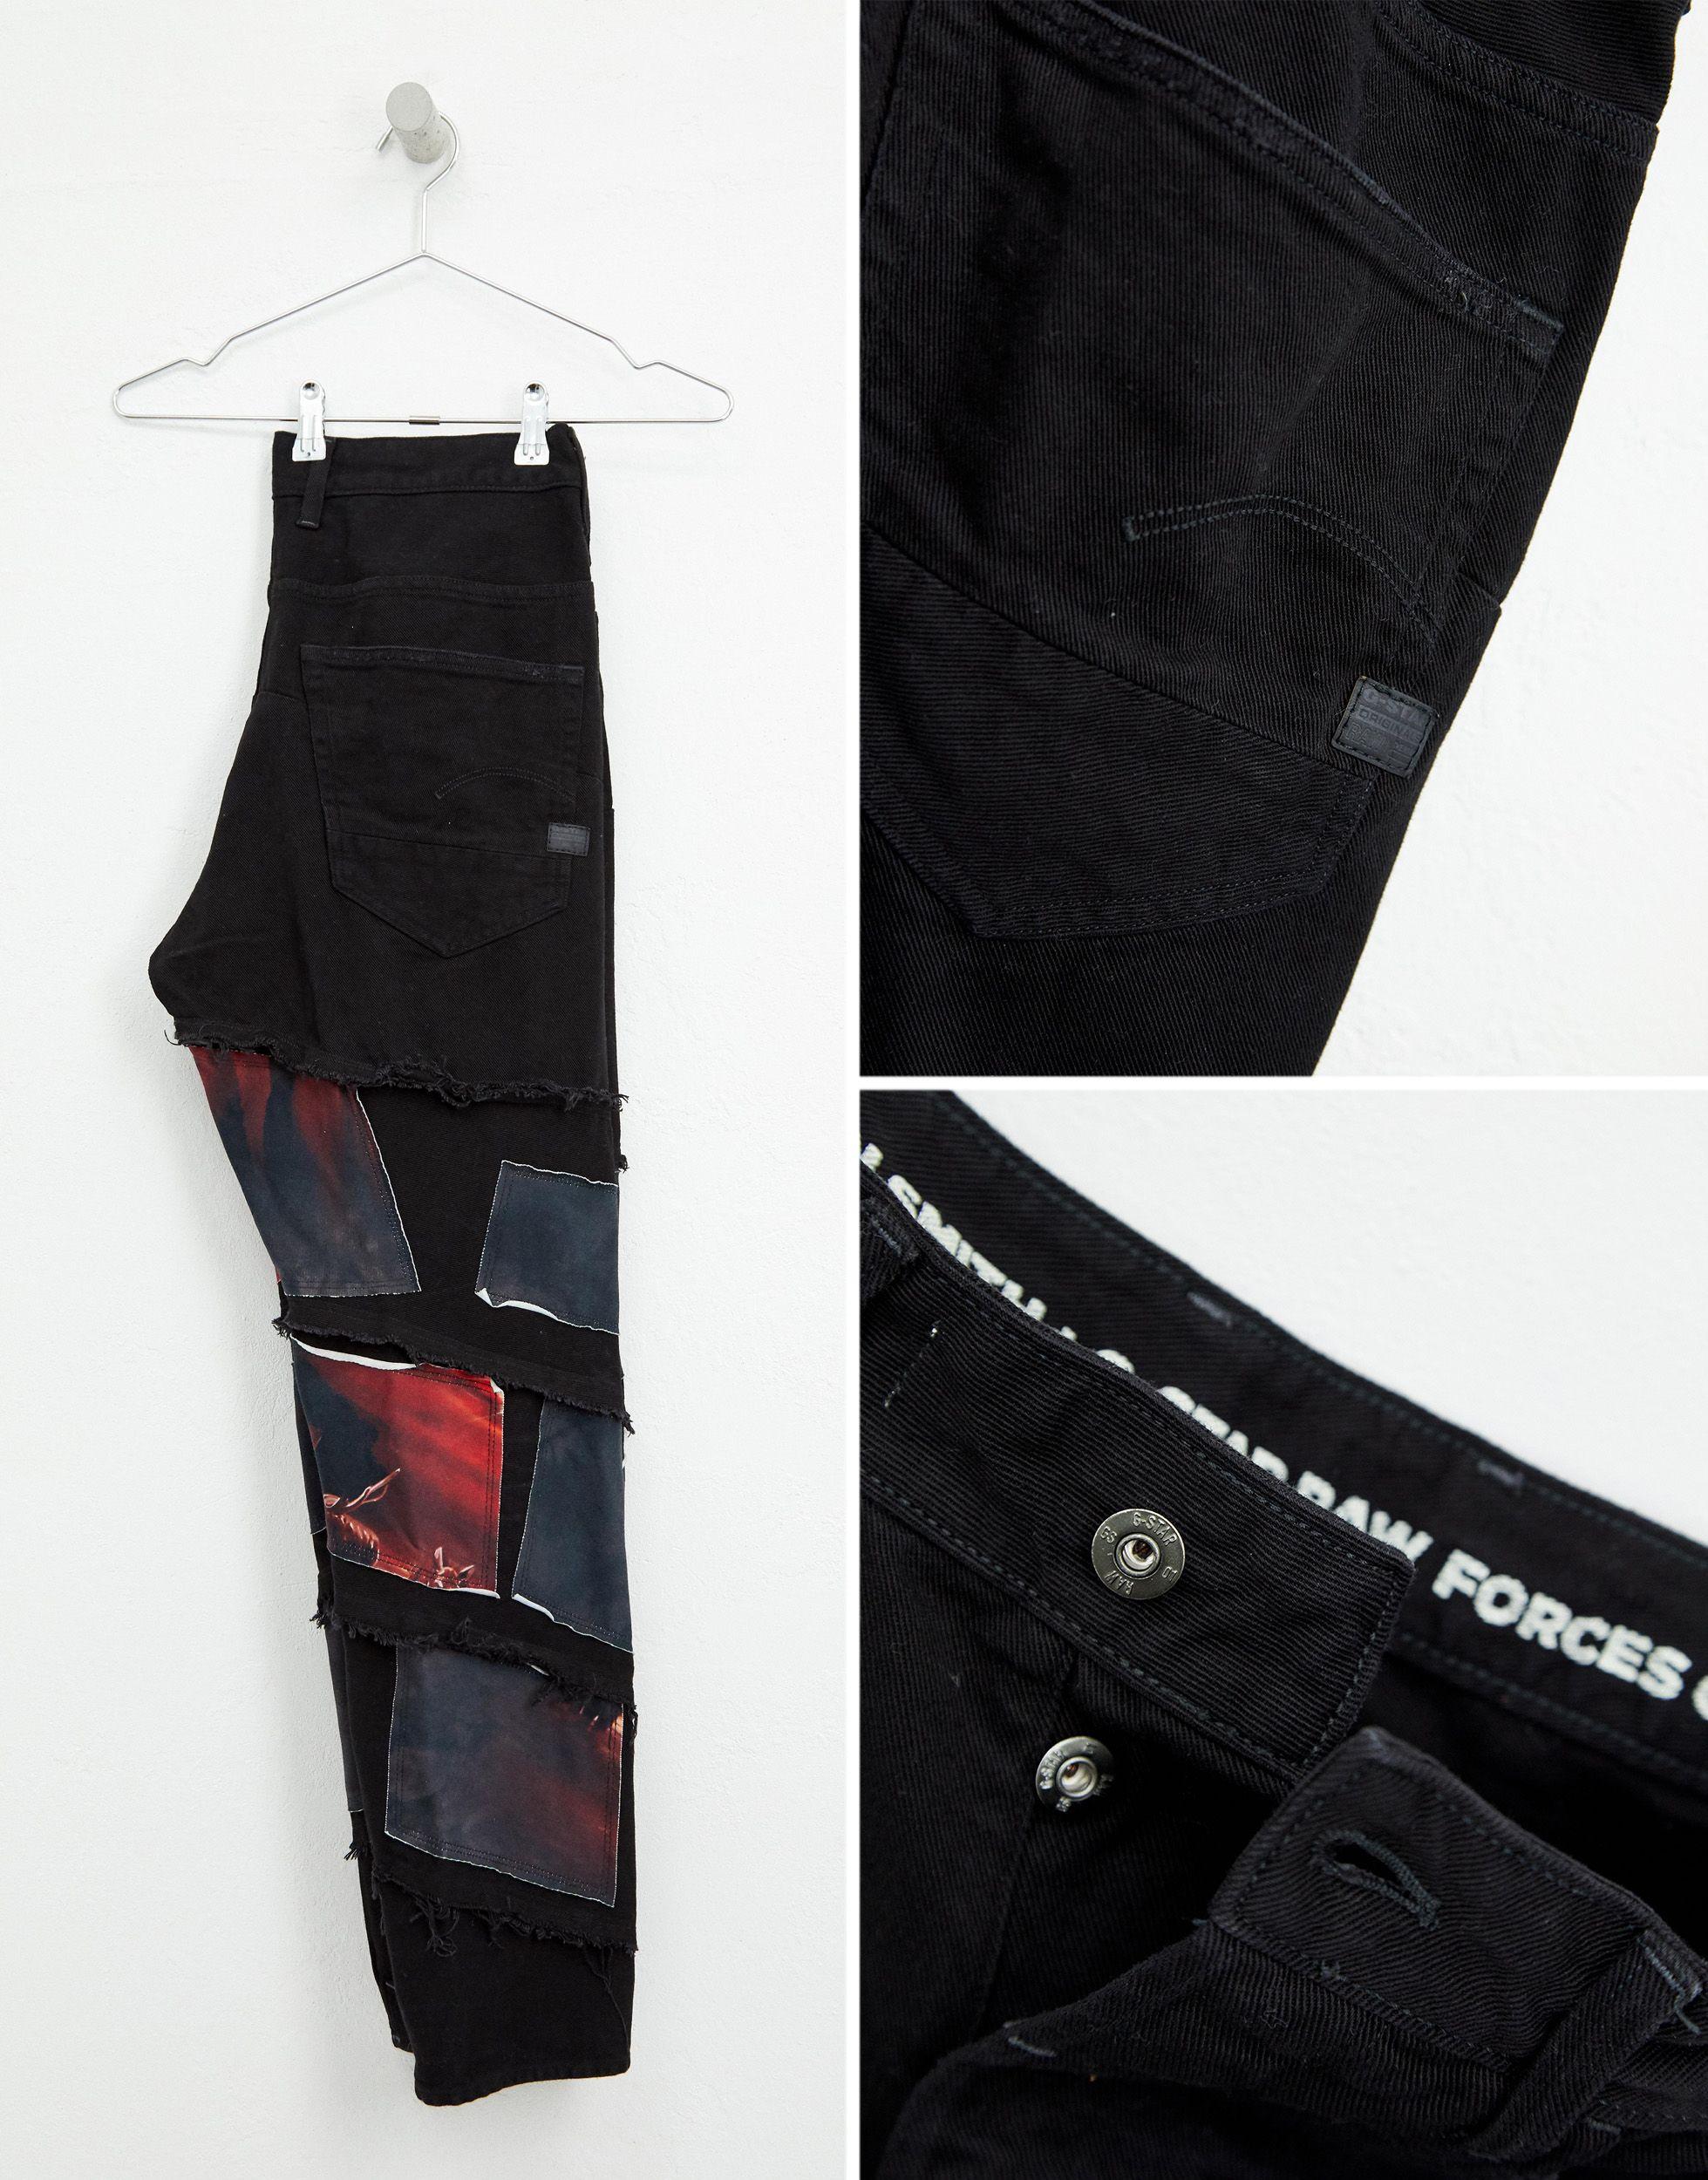 G-Star RAW Denim X Jaden Smith Spiral Eclipse Patches 3d Slim Jeans in Blue  for Men - Lyst